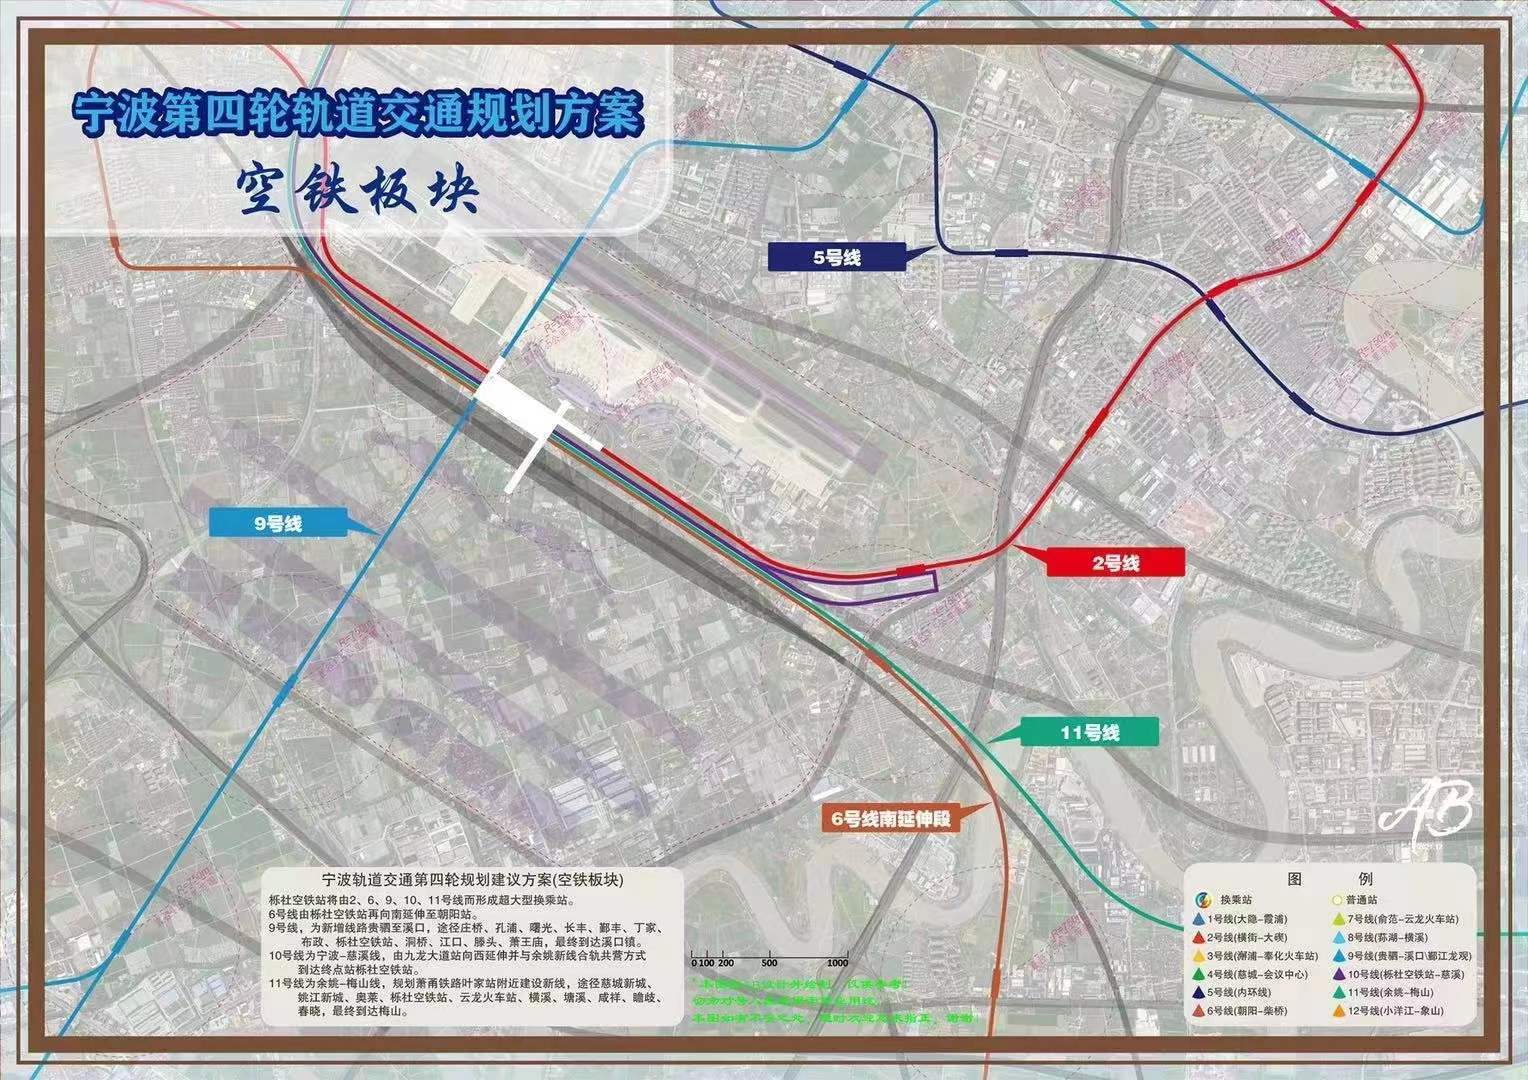 余姚至梅山也有地铁规划?宁波11号线来了?